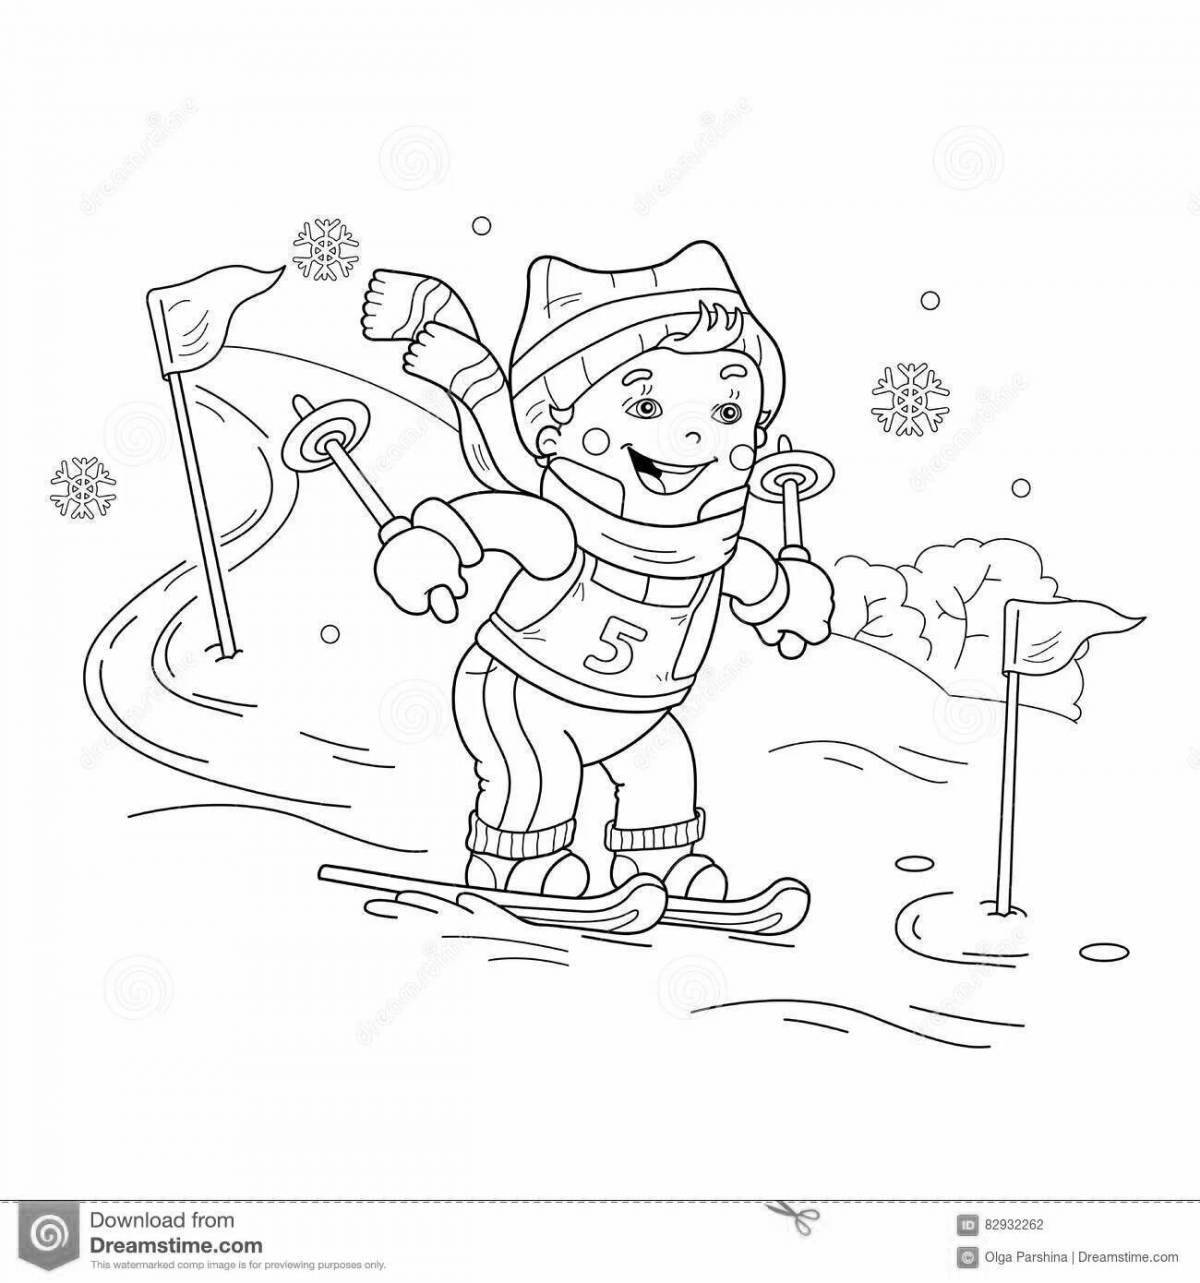 Раскраска жизнерадостный лыжник для детей 6-7 лет